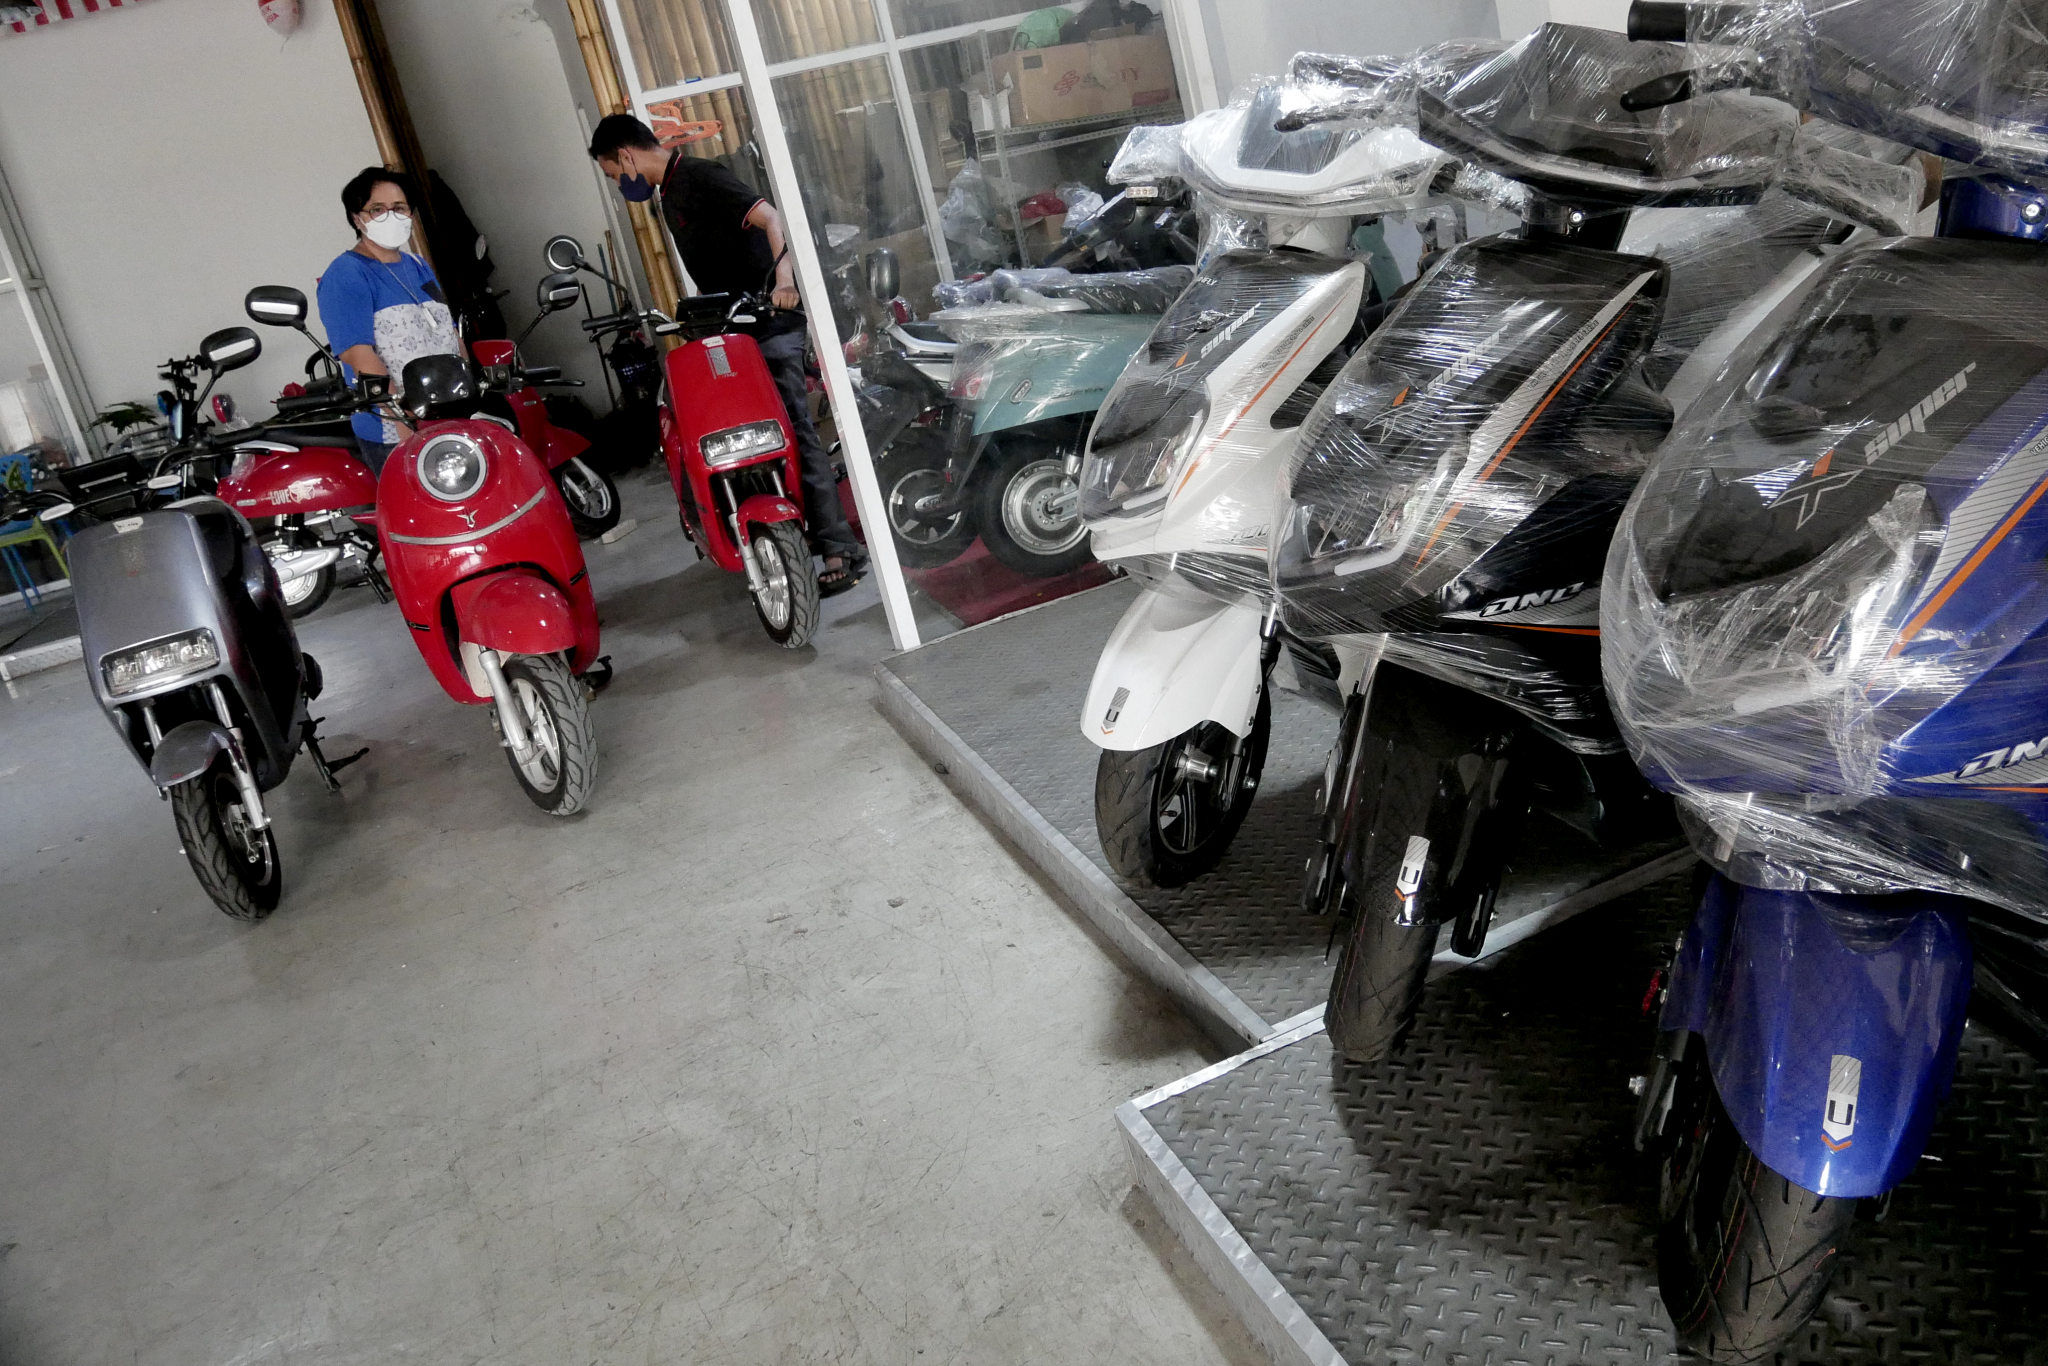 Karyawan melayani calon pembeli di showroom penjualan sepeda motor listrik Uwinfly dikawasan Otista, Jakarta, Rabu, 24 November 2021. Foto: Ismail Pohan/TrenAsia